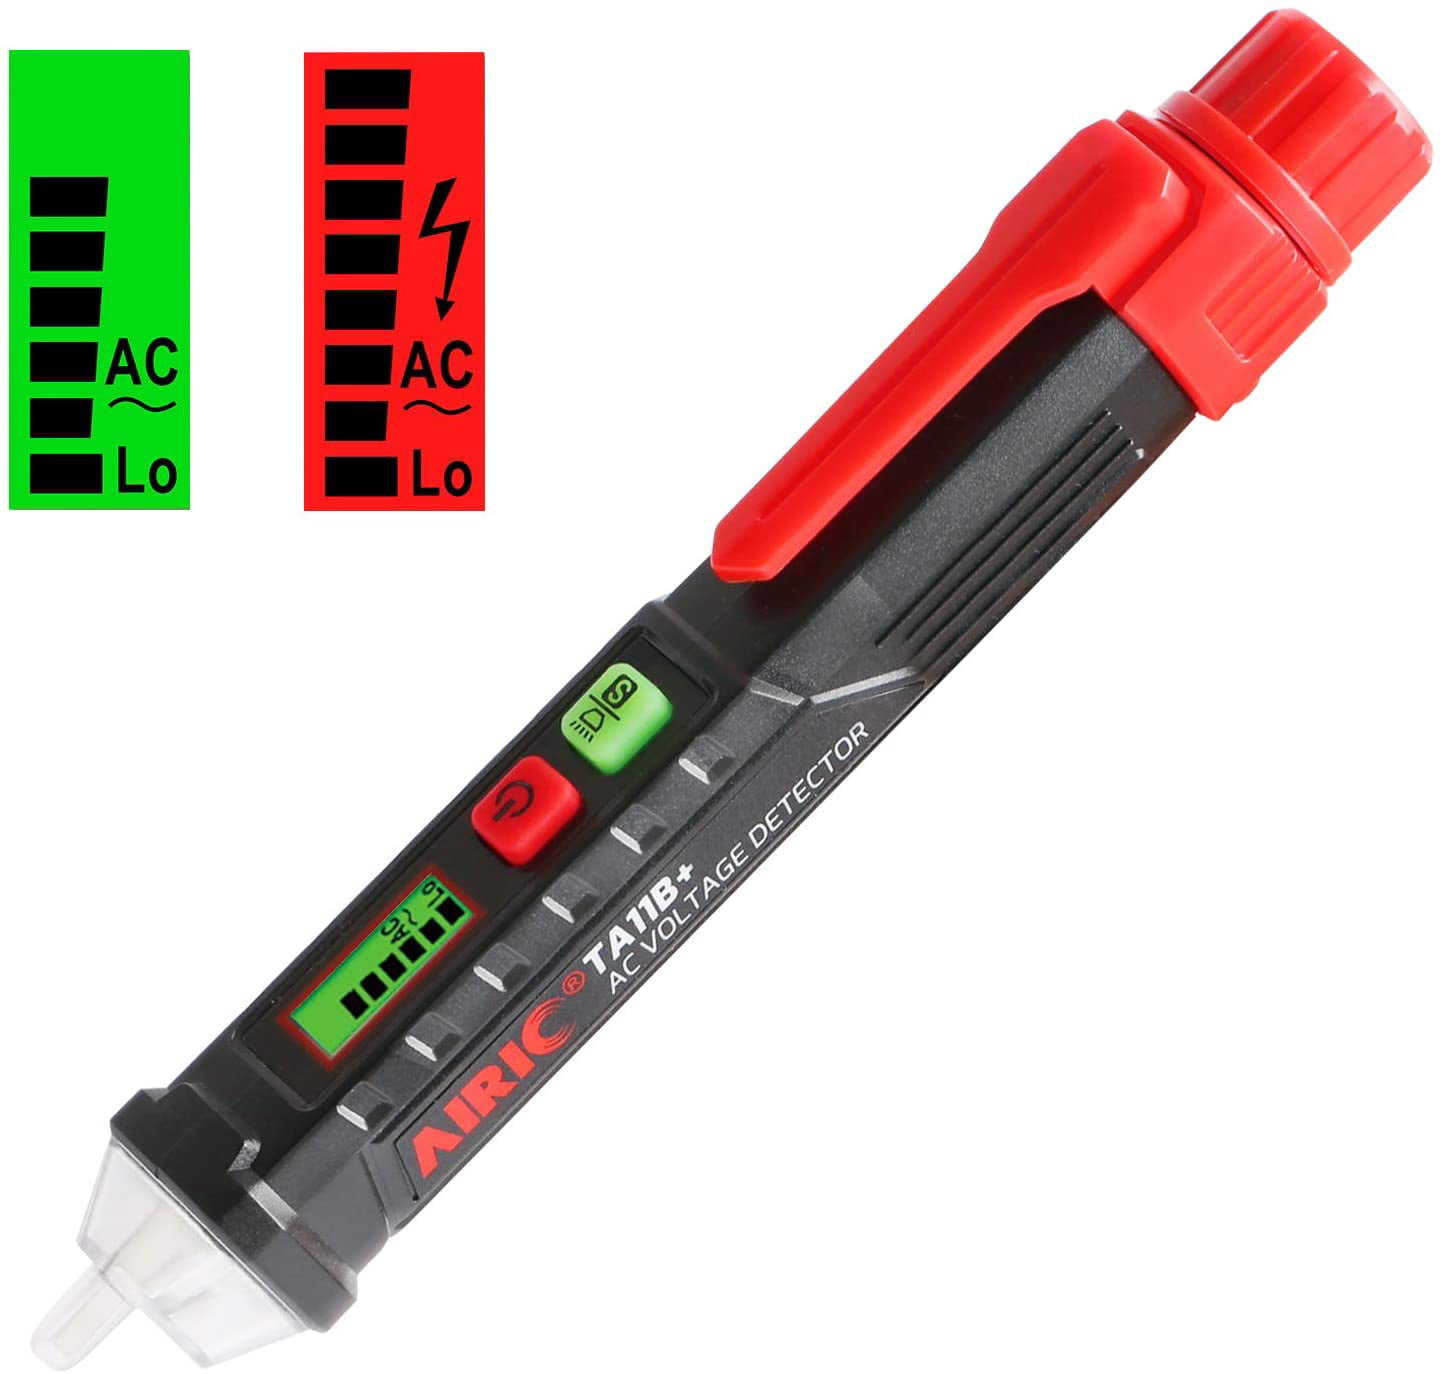 AC Voltage Tester Pen 12V/48V-1000V Sensitivity Electric Compact w/ LED Light 